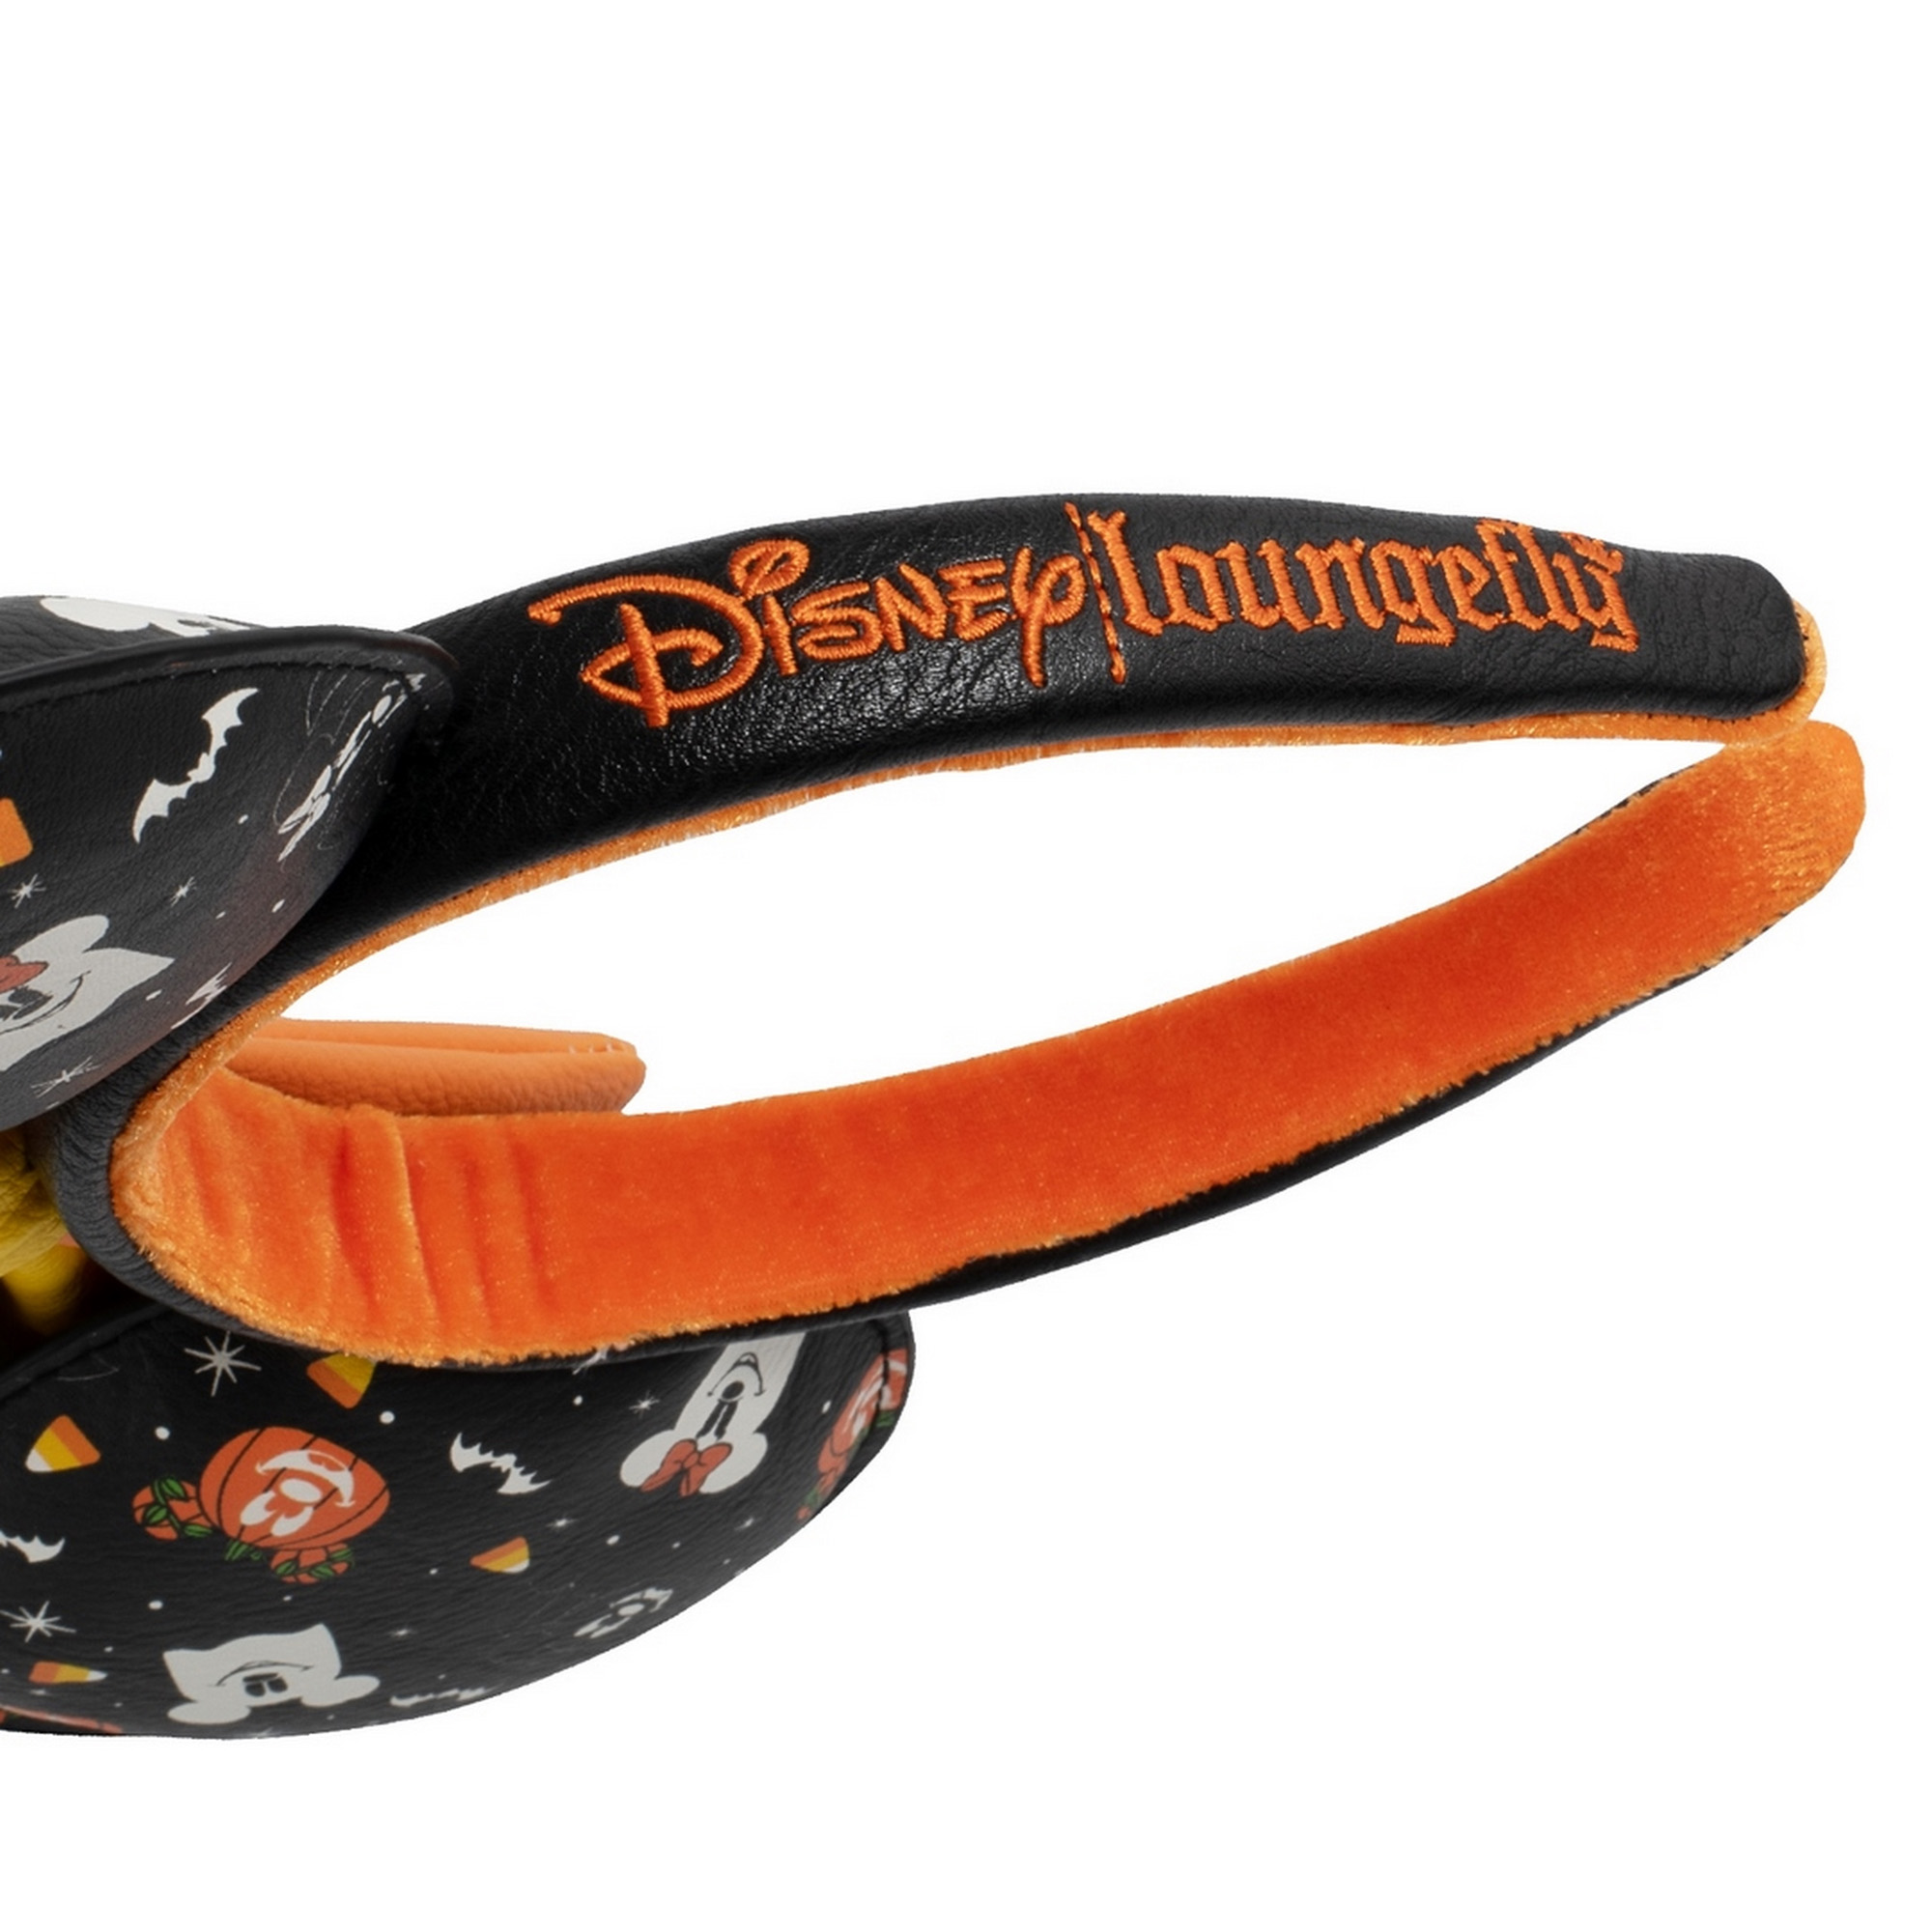 Cerchietto  con orecchie di Minnie Spooky Mice Candy - Disney